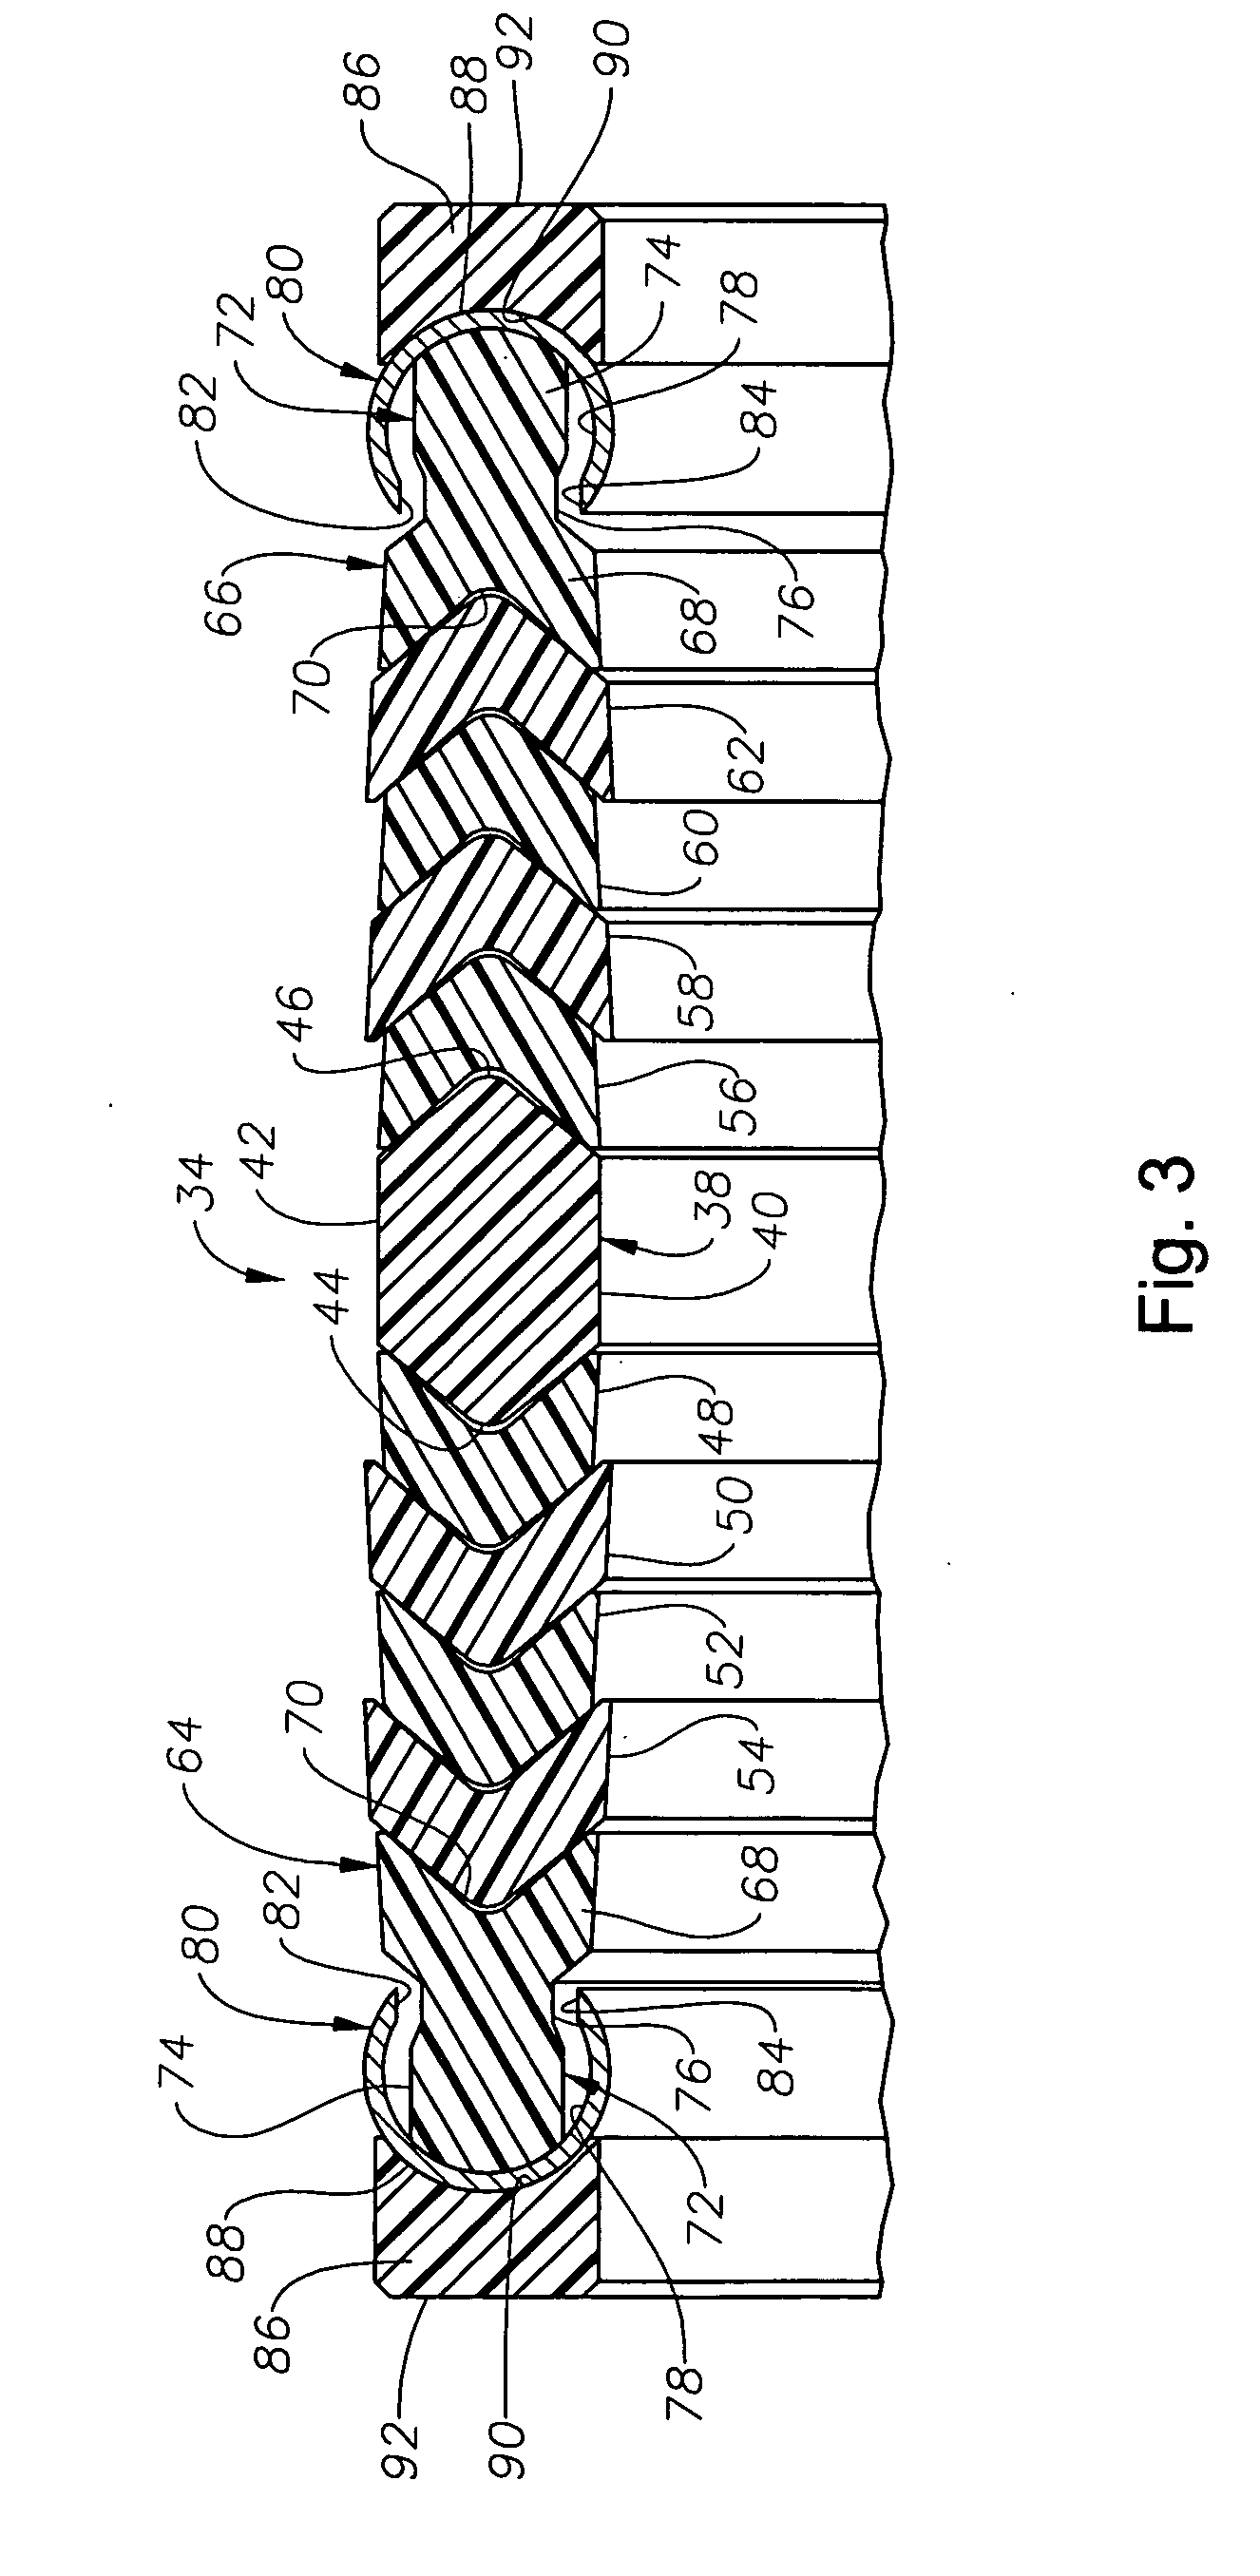 Metal-to-metal non-elastomeric seal stack